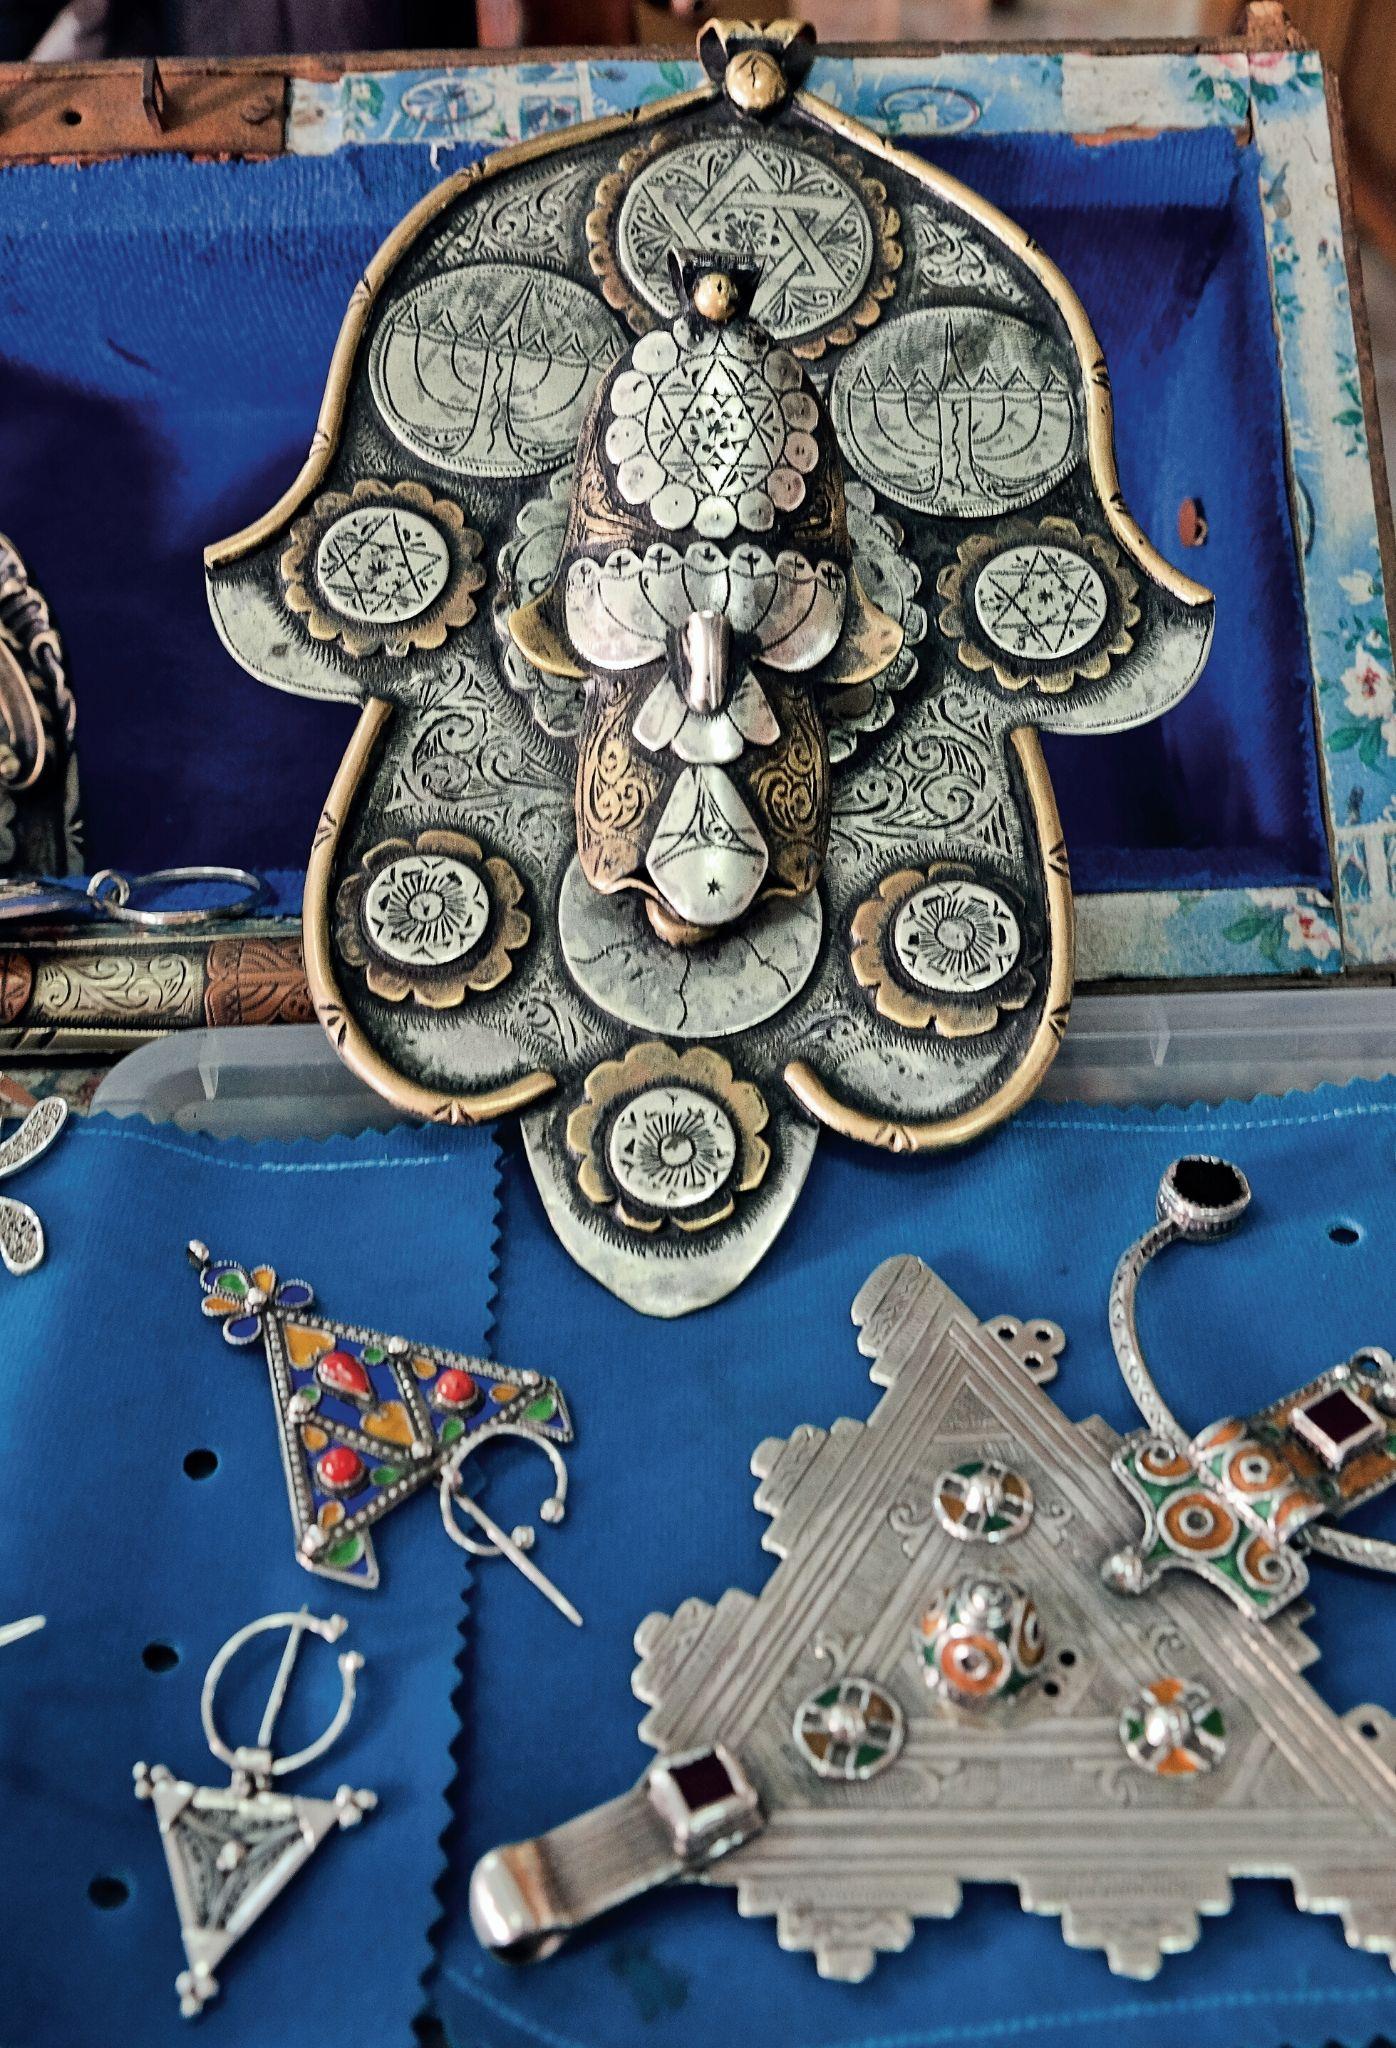  Bogato zdobiony amulet chroniący przed złym okiem, nazywany ręką Fatimy, i tradycyjne berberyjskie ozdoby z manufaktury biżuterii Maalem Ali 1908. (Fot. Anna Janowska)